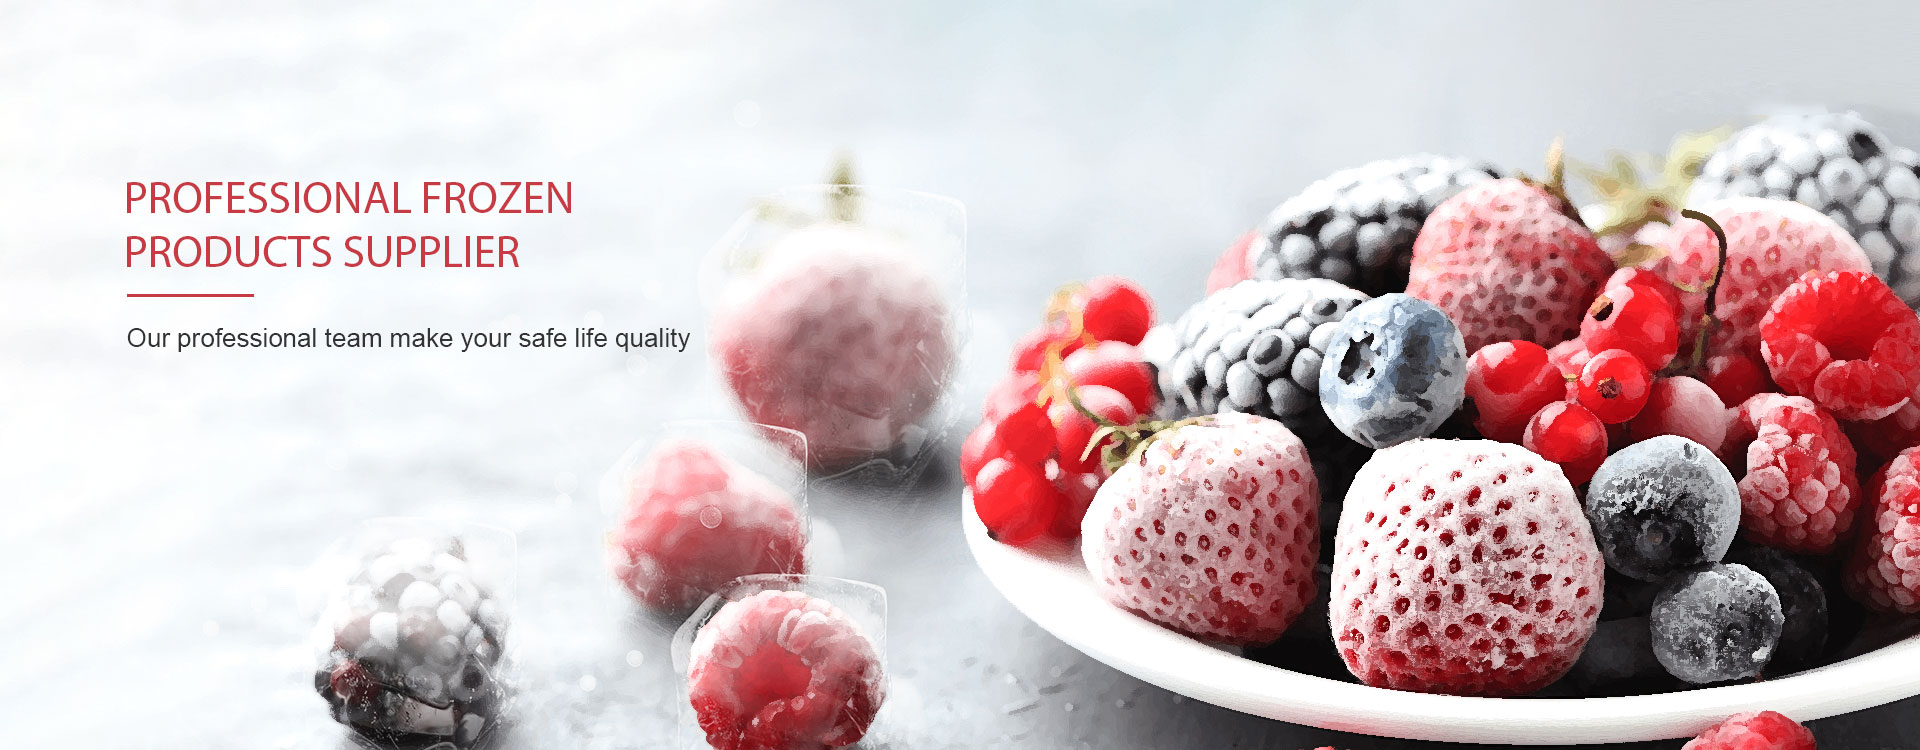 Is frozen fruit healthy